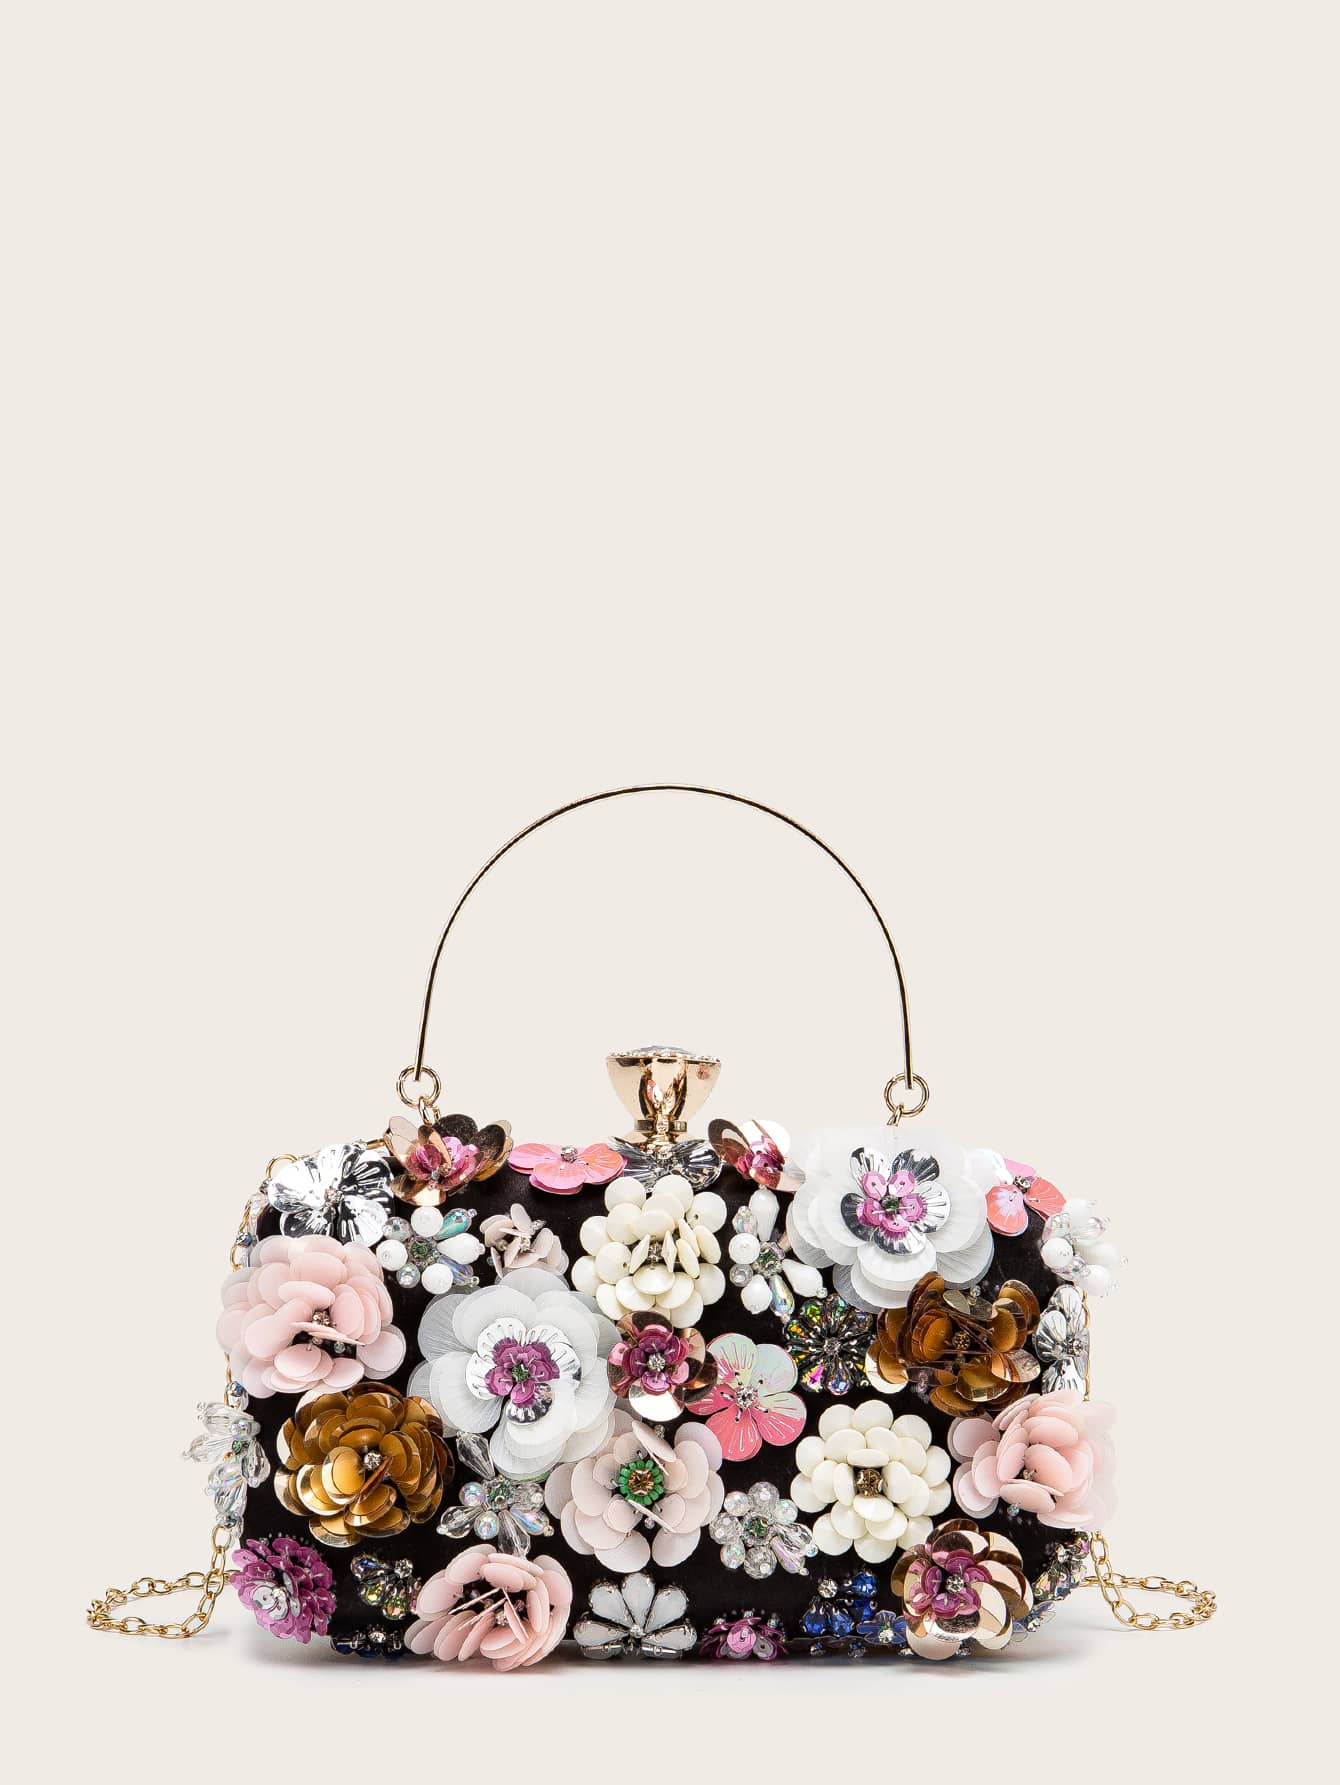 Floral Appliques Chain Clutch Bag